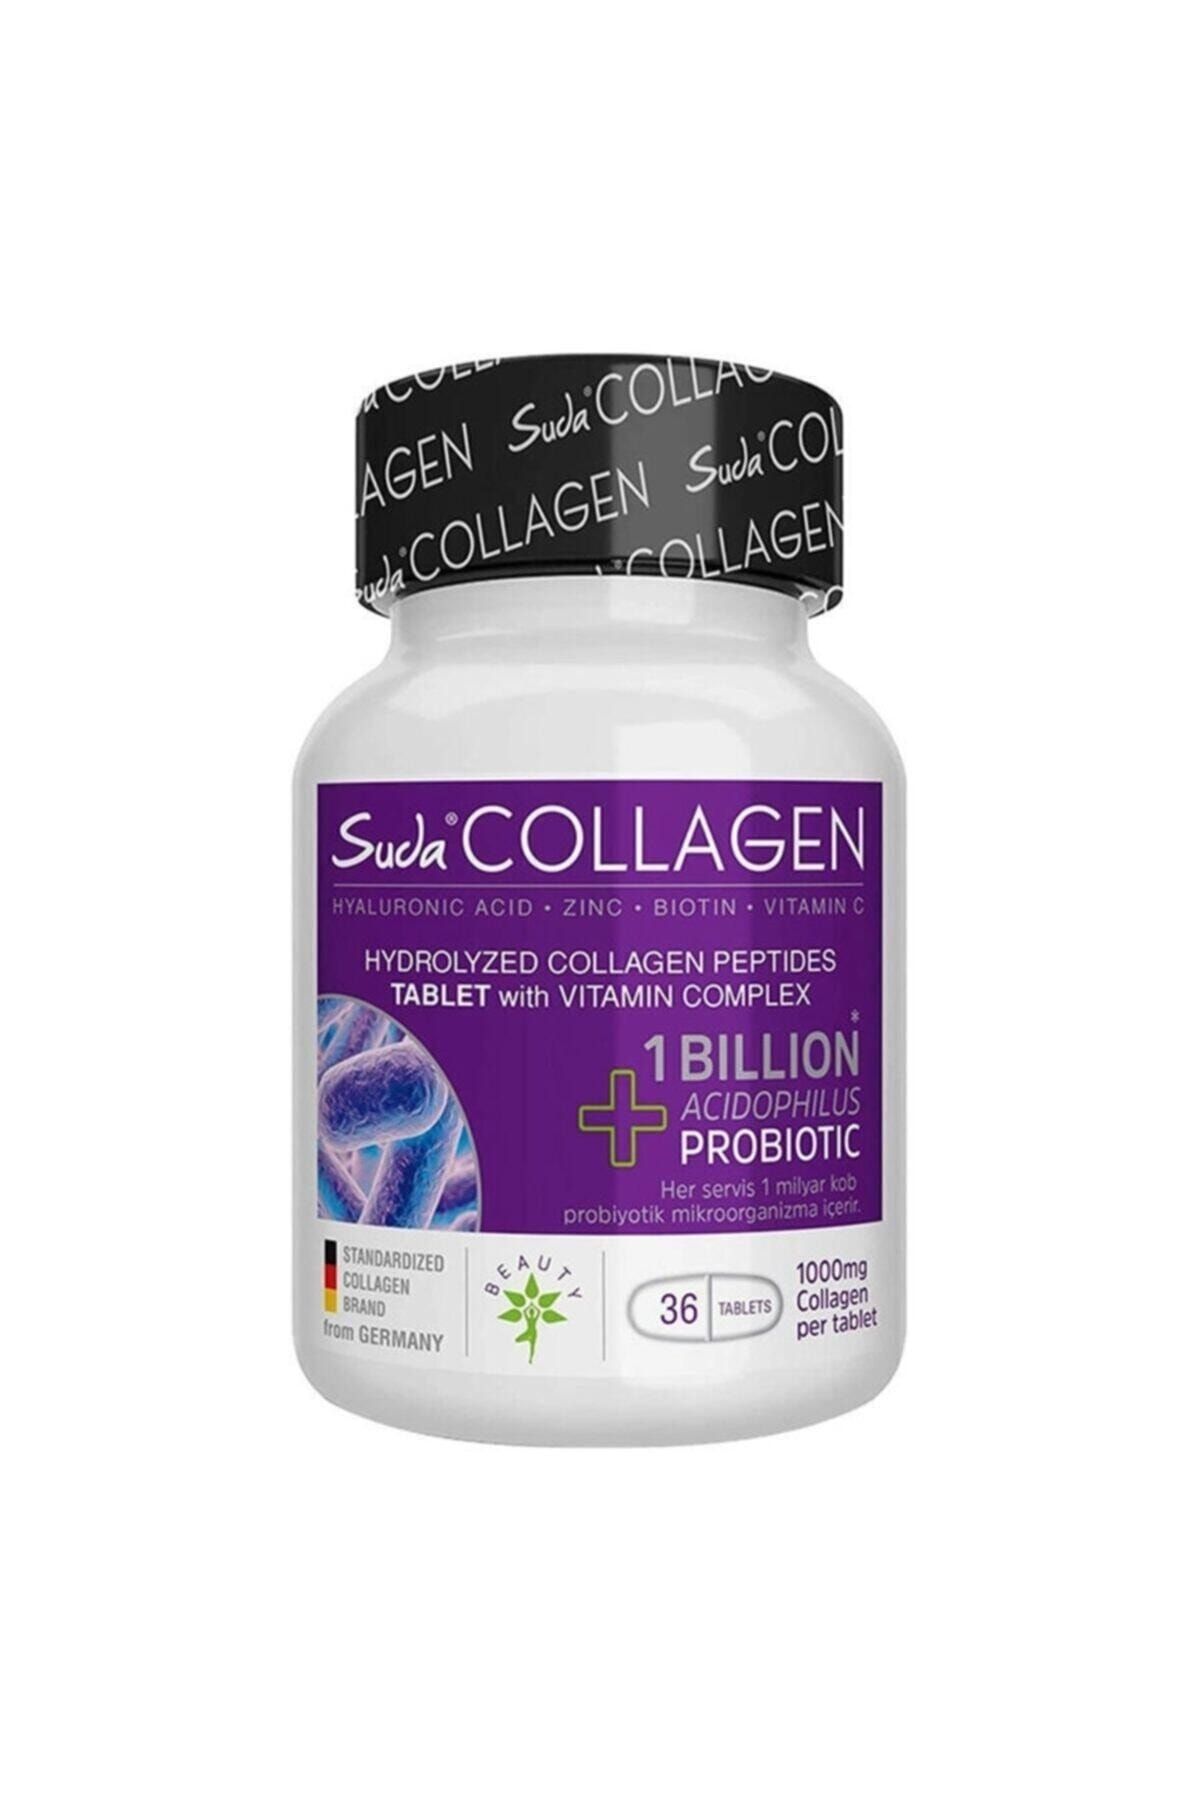 Коллаген купить применению. Турецкий коллаген suda Collagen Multi form. Suda Collagen Collagen + Acidophilus Probiotic. Коллаген suda Турция Multiform. Суда коллаген Турция.